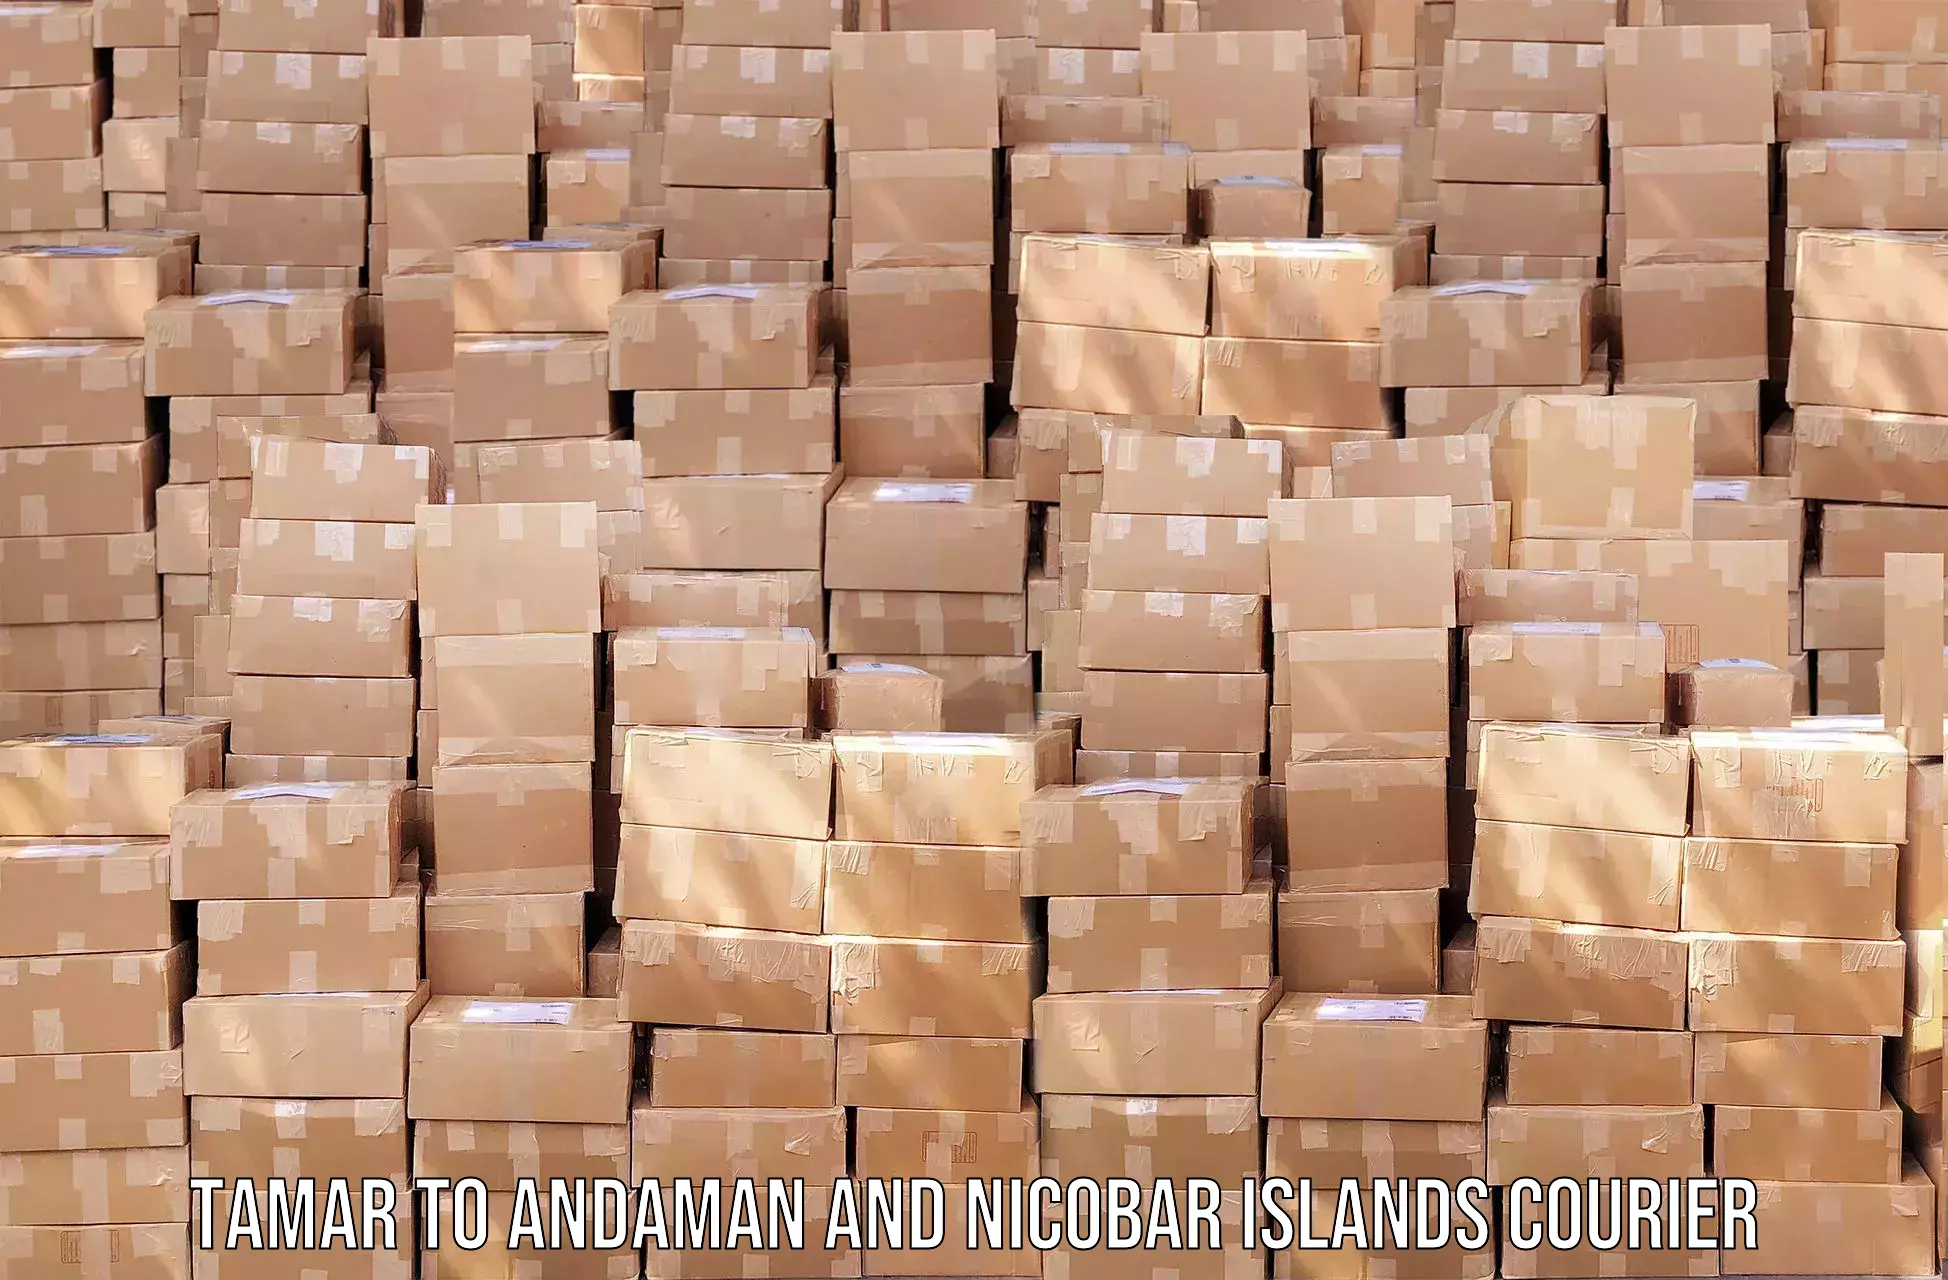 Global logistics network Tamar to Andaman and Nicobar Islands